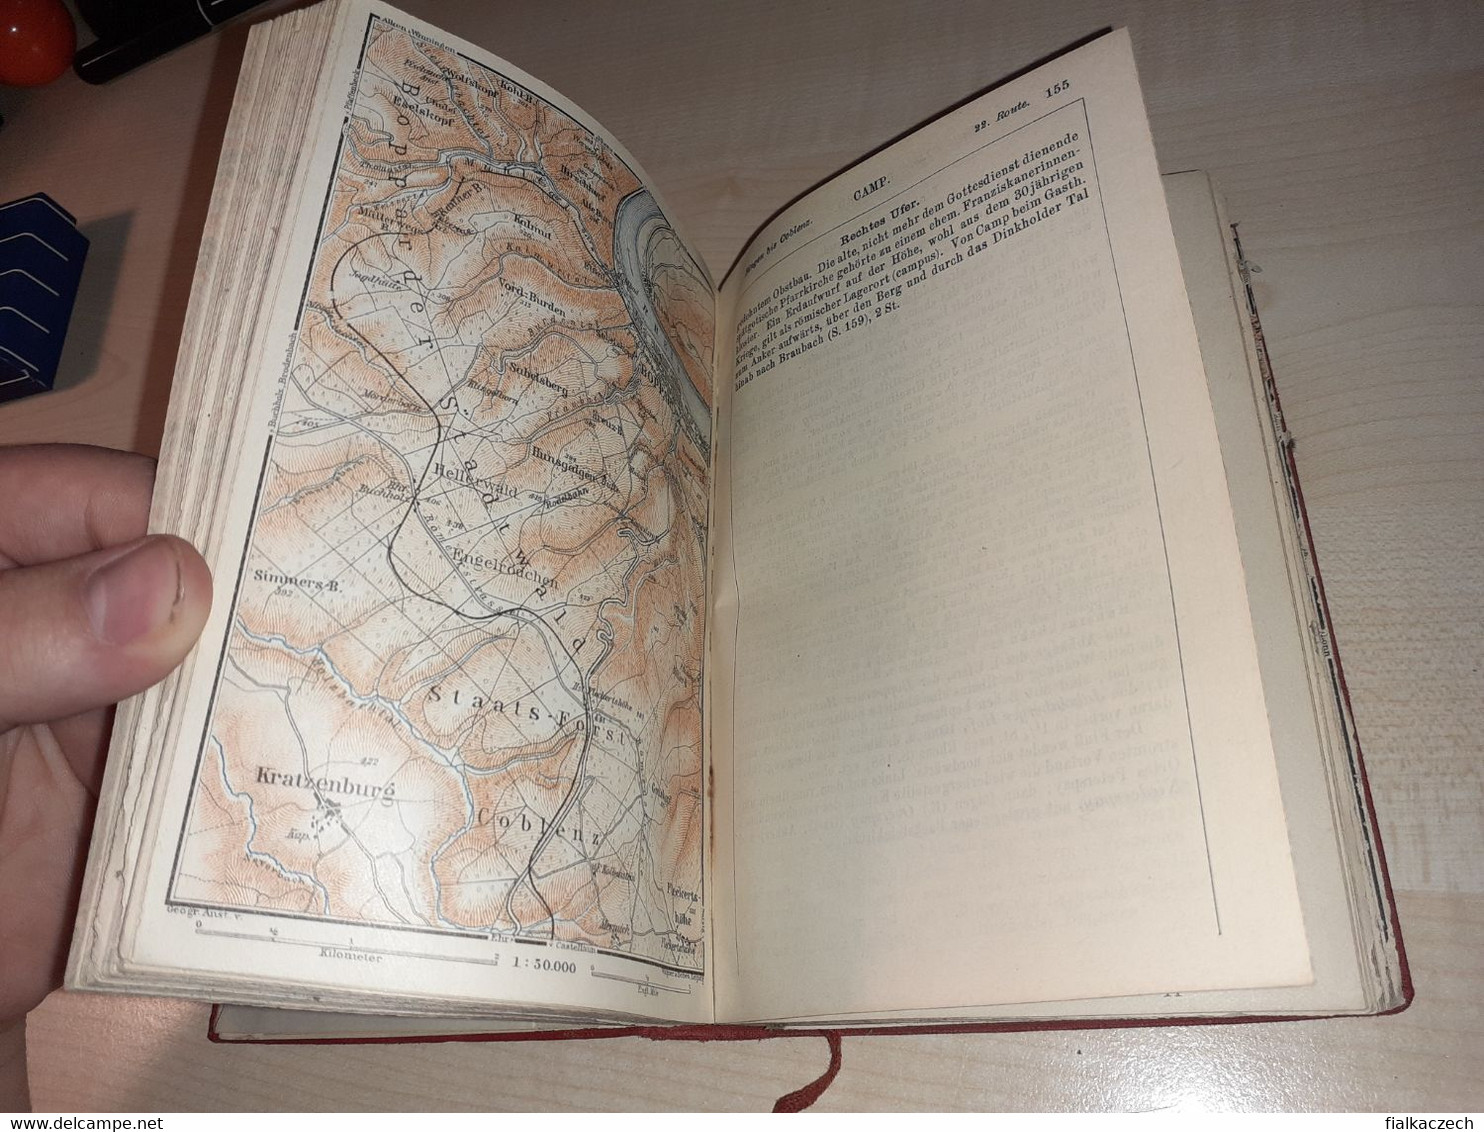 Baedekers, Rheinlande tour guide, 1925, von Elsässischen zur Holländischen Grenze + Ticket to Frankfurter Goethemuseum